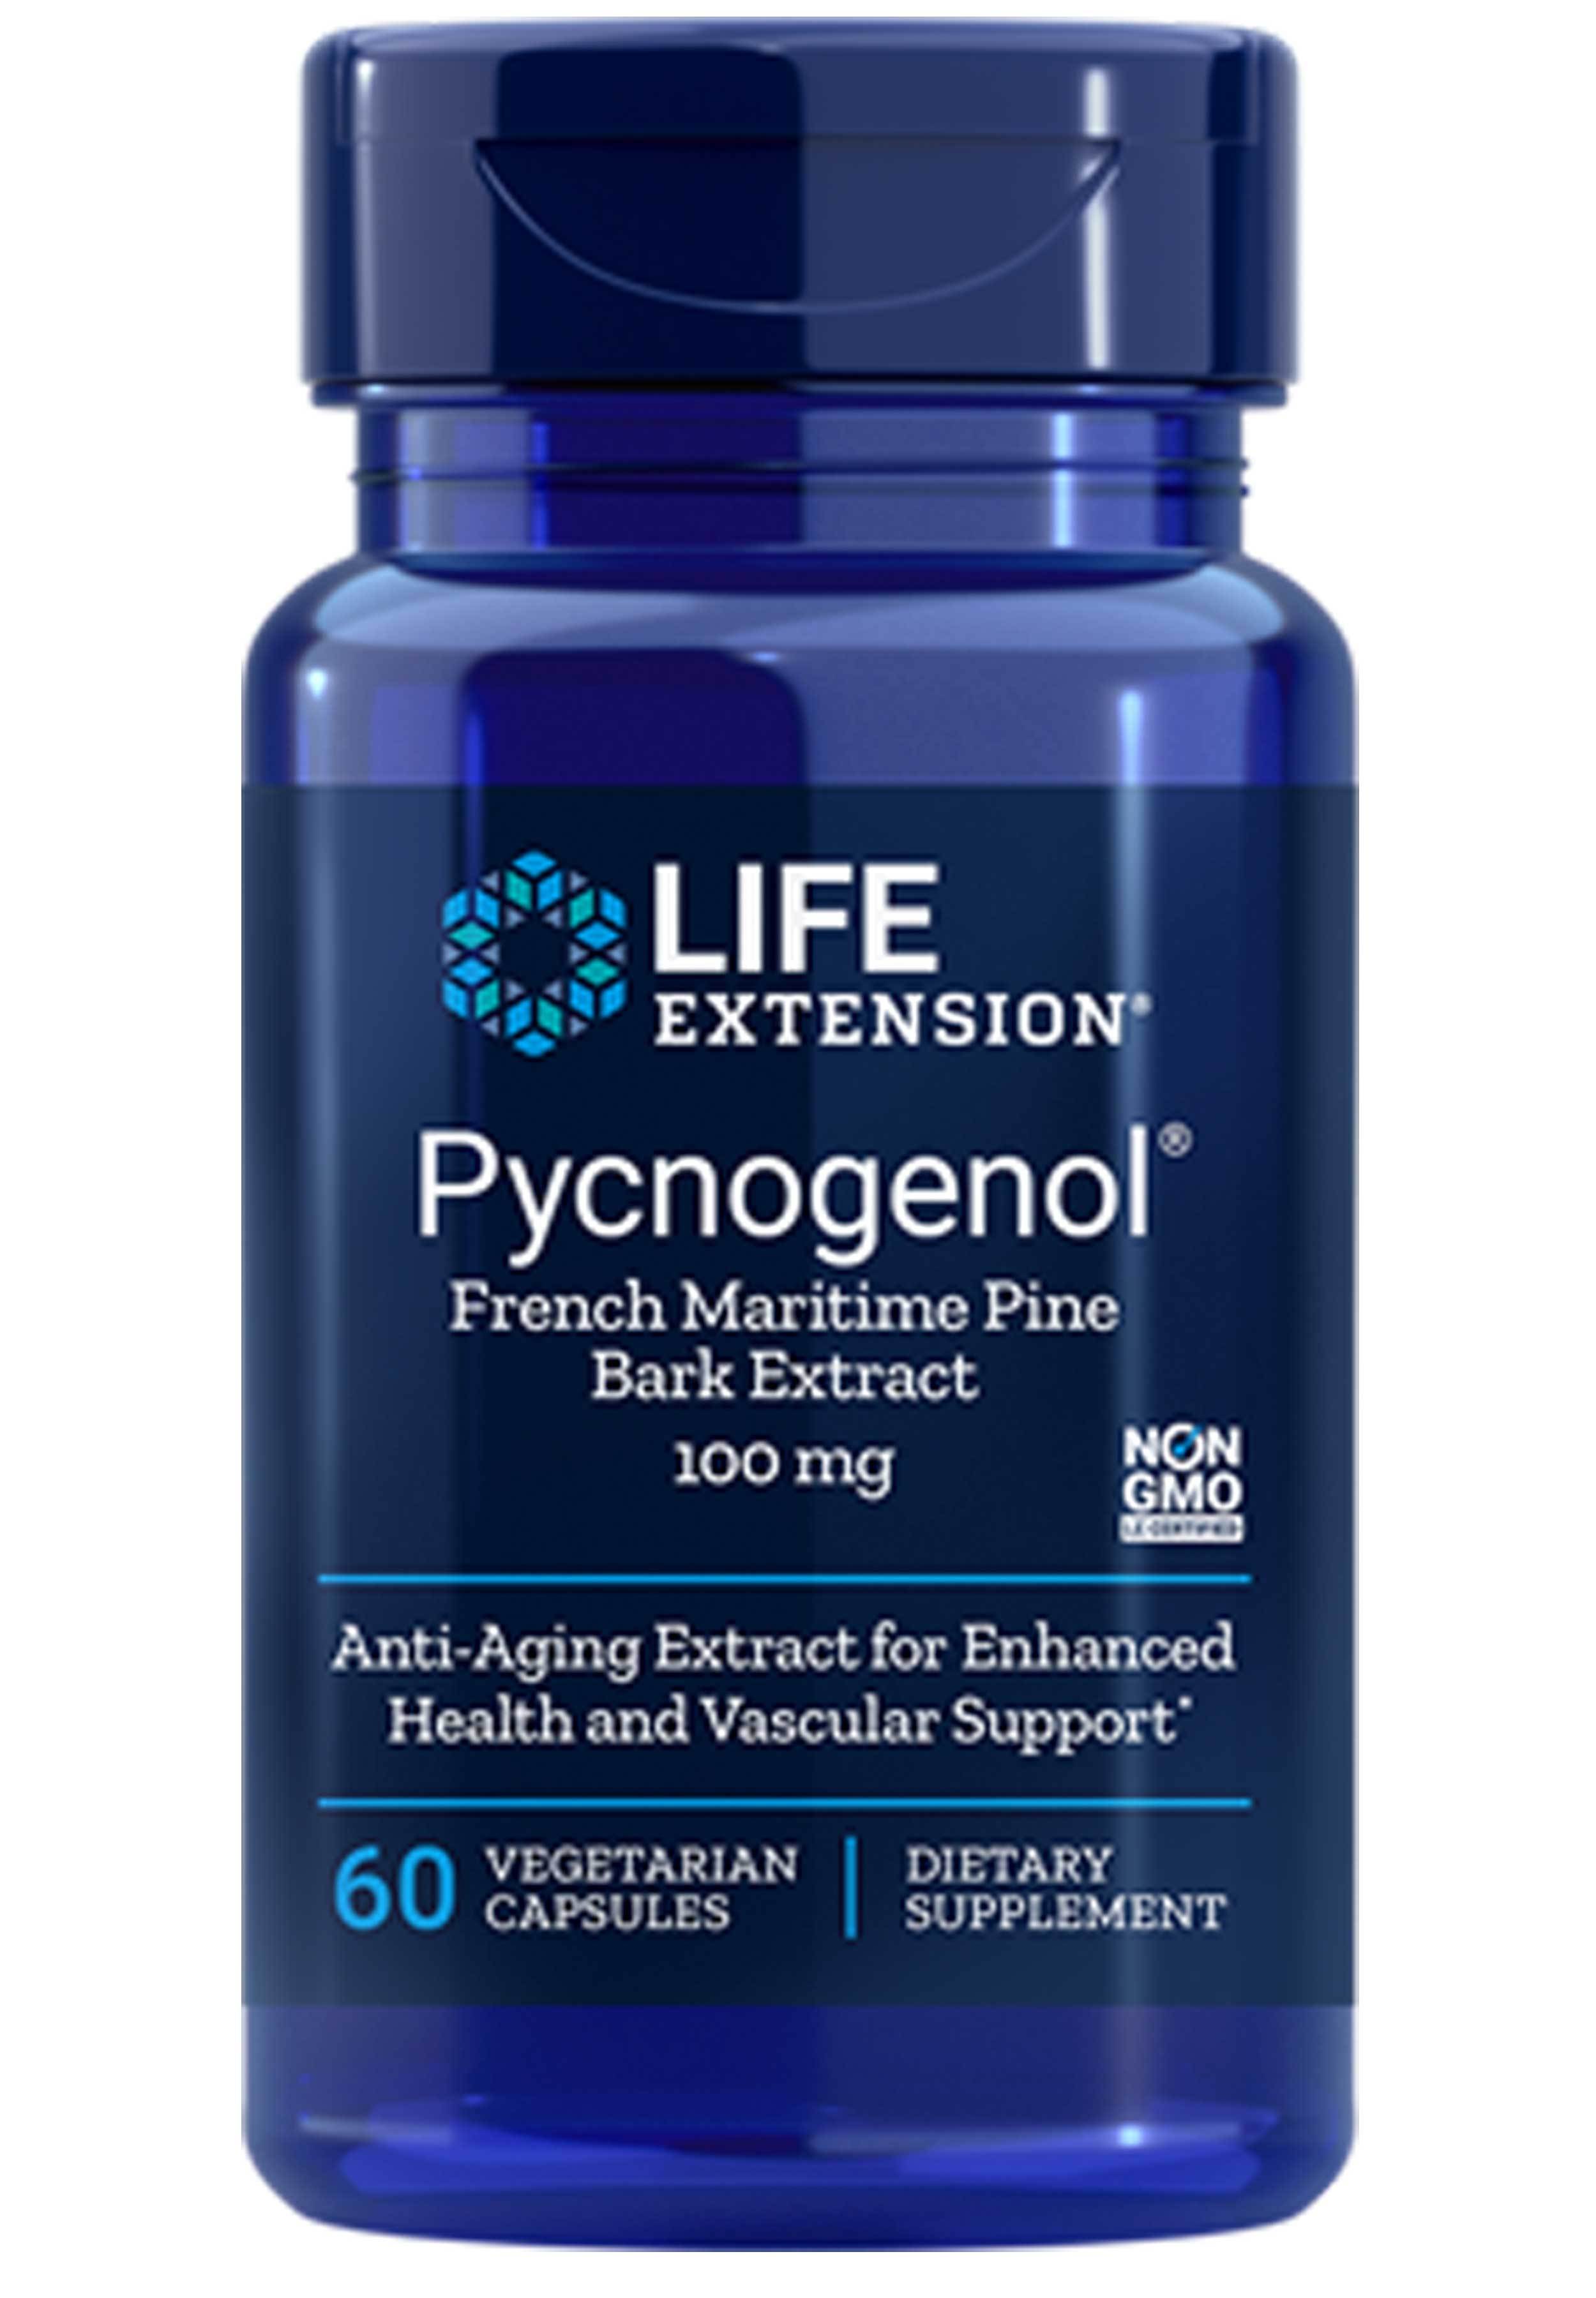 Life Extension Pycnogenol